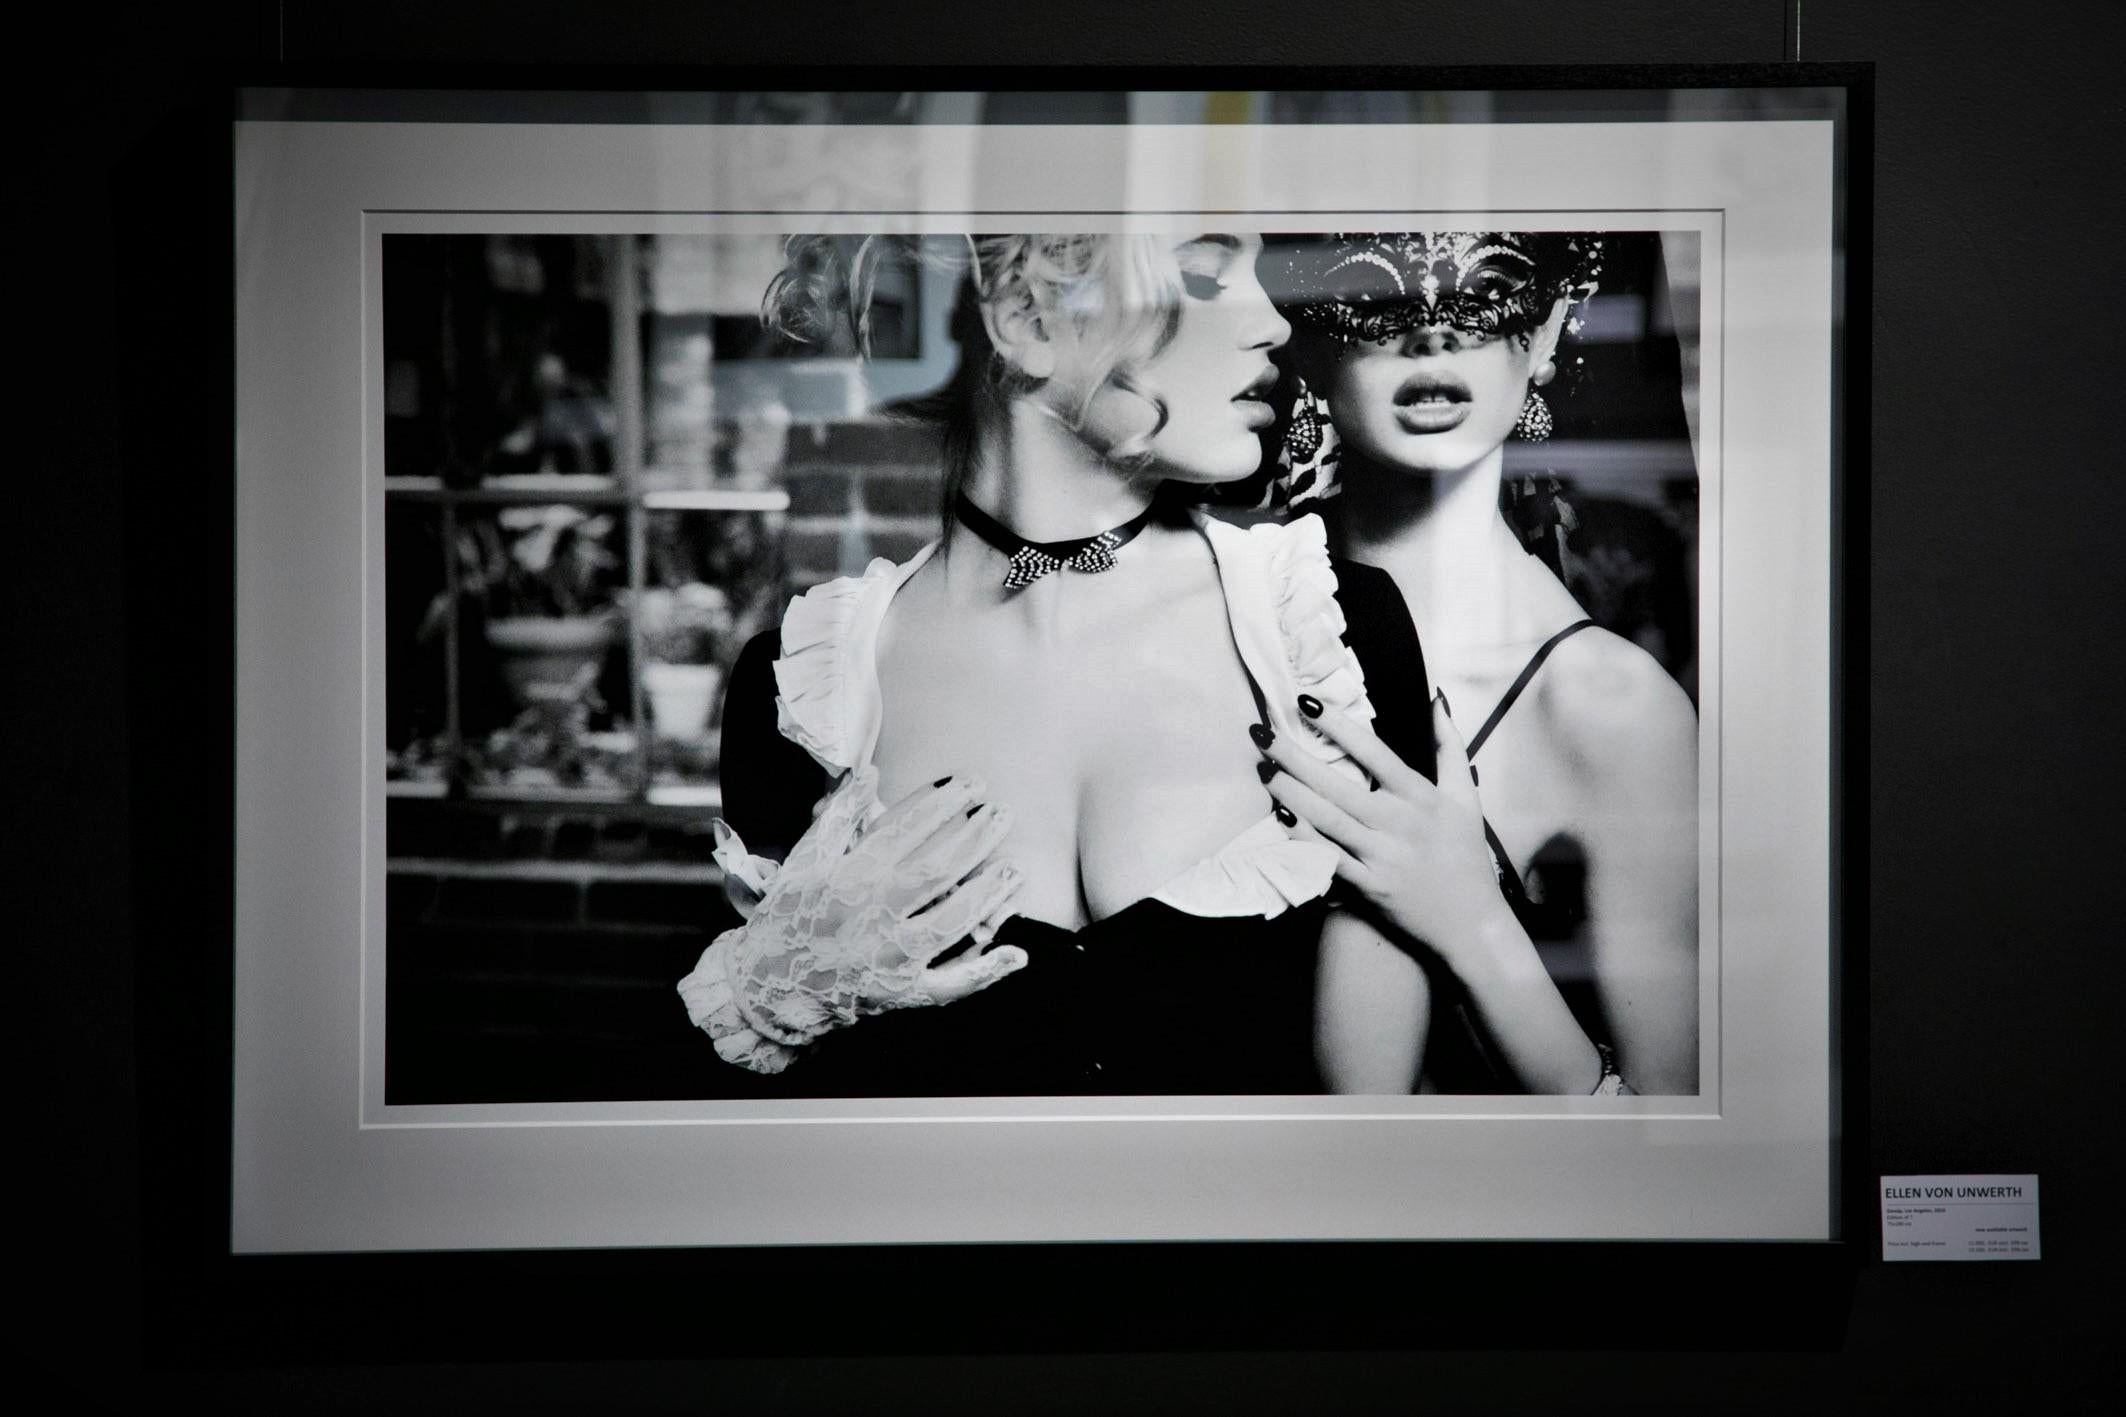 Gossip - portrait sensuel de deux mannequins en masques, photographie d'art, 2003 - Photograph de Ellen von Unwerth